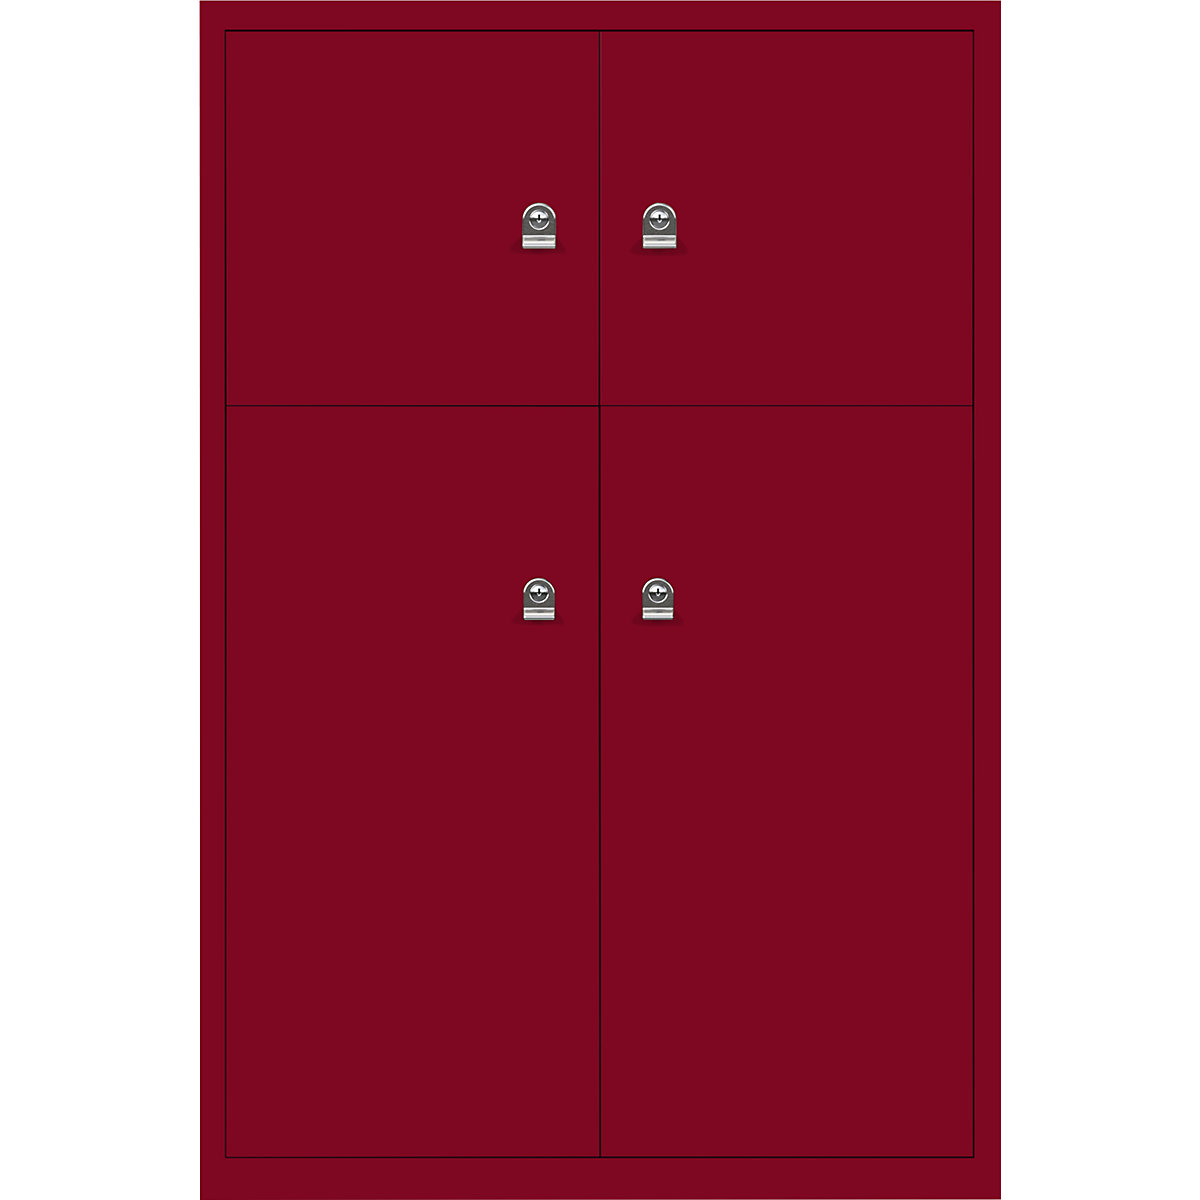 LateralFile™ Lodge – BISLEY, so 4 uzamykacími priehradkami, výška 2 x 375 mm, 2 x 755 mm, kardinálska červená-25